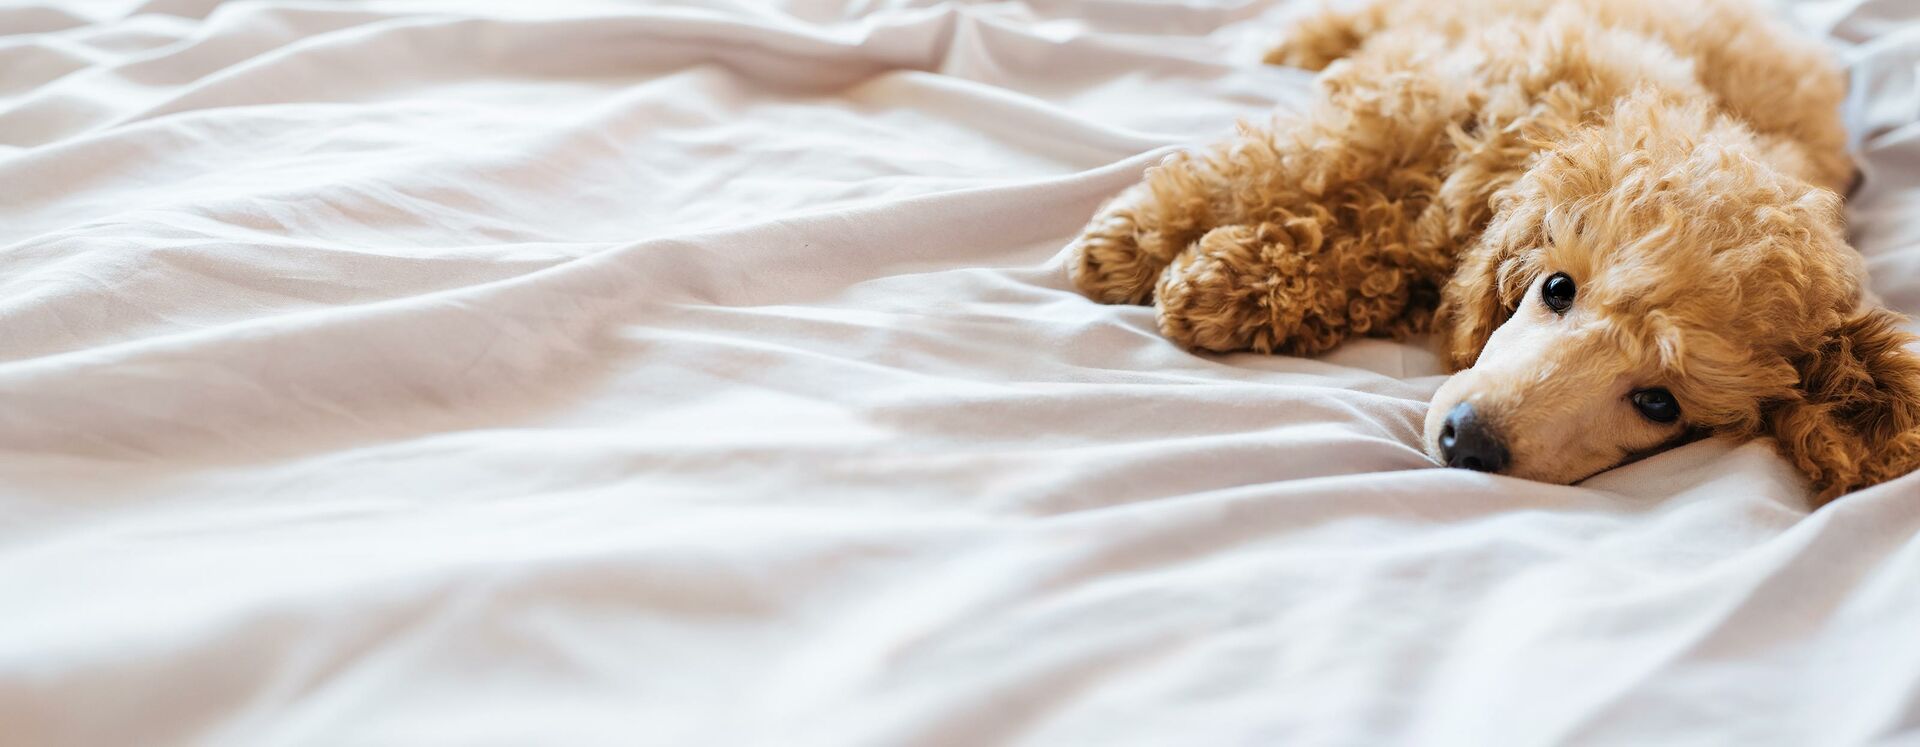 Hund liegt auf einer zerwühlten hellen Decke.